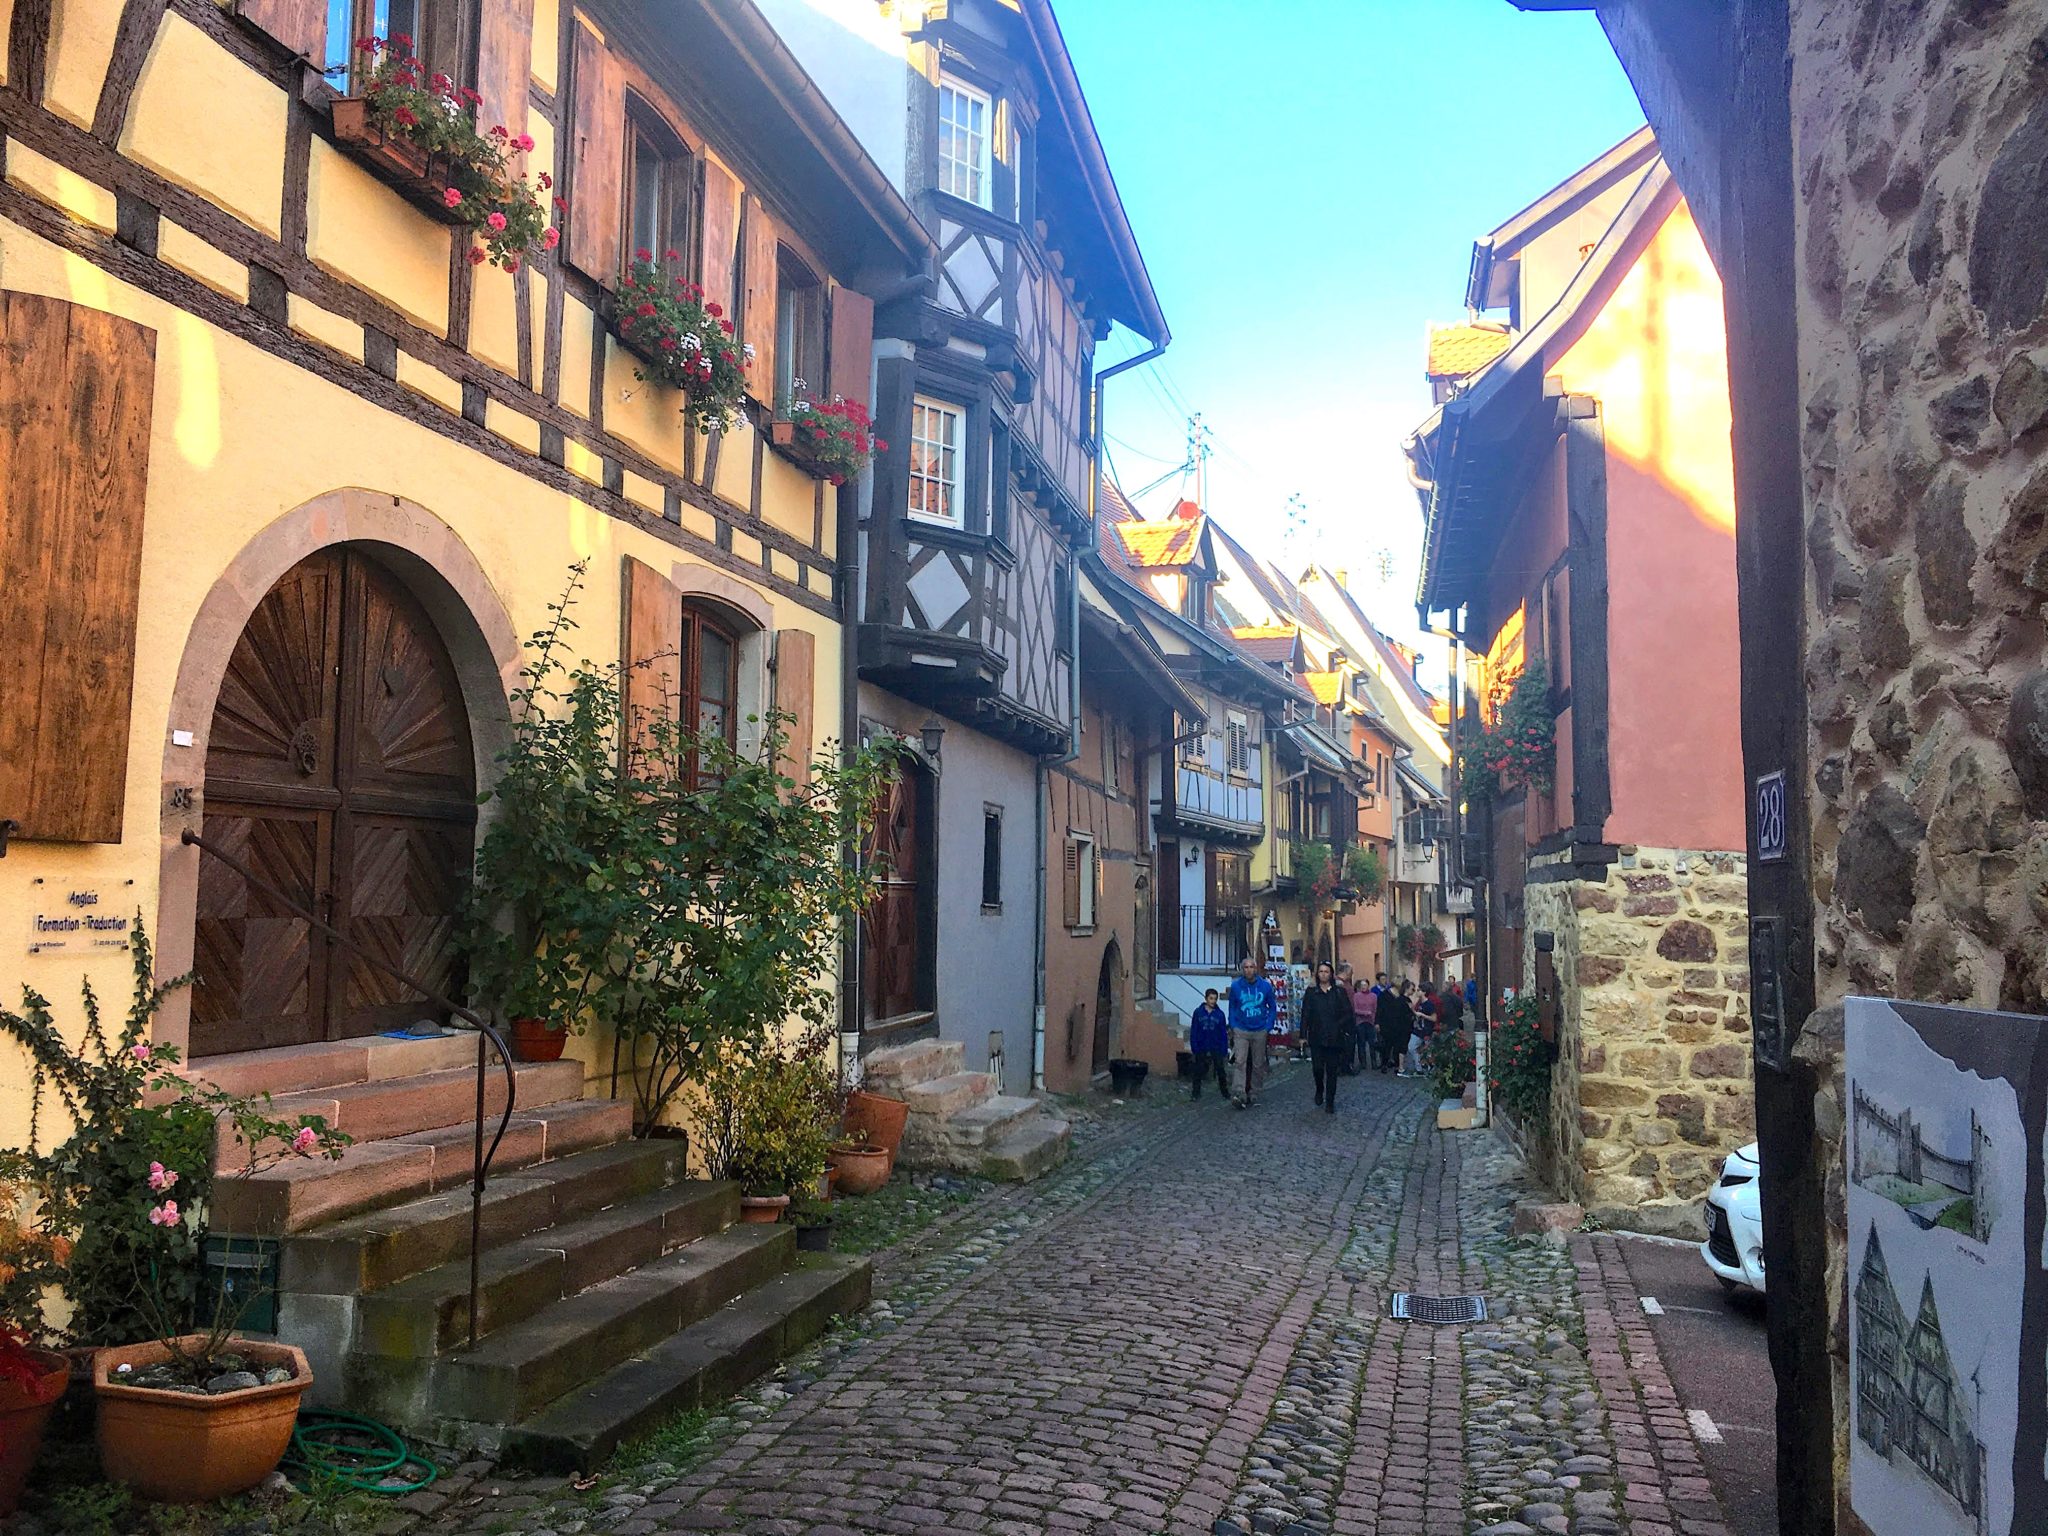 Alsace bölgesi gezilecek yerler Eguisheim